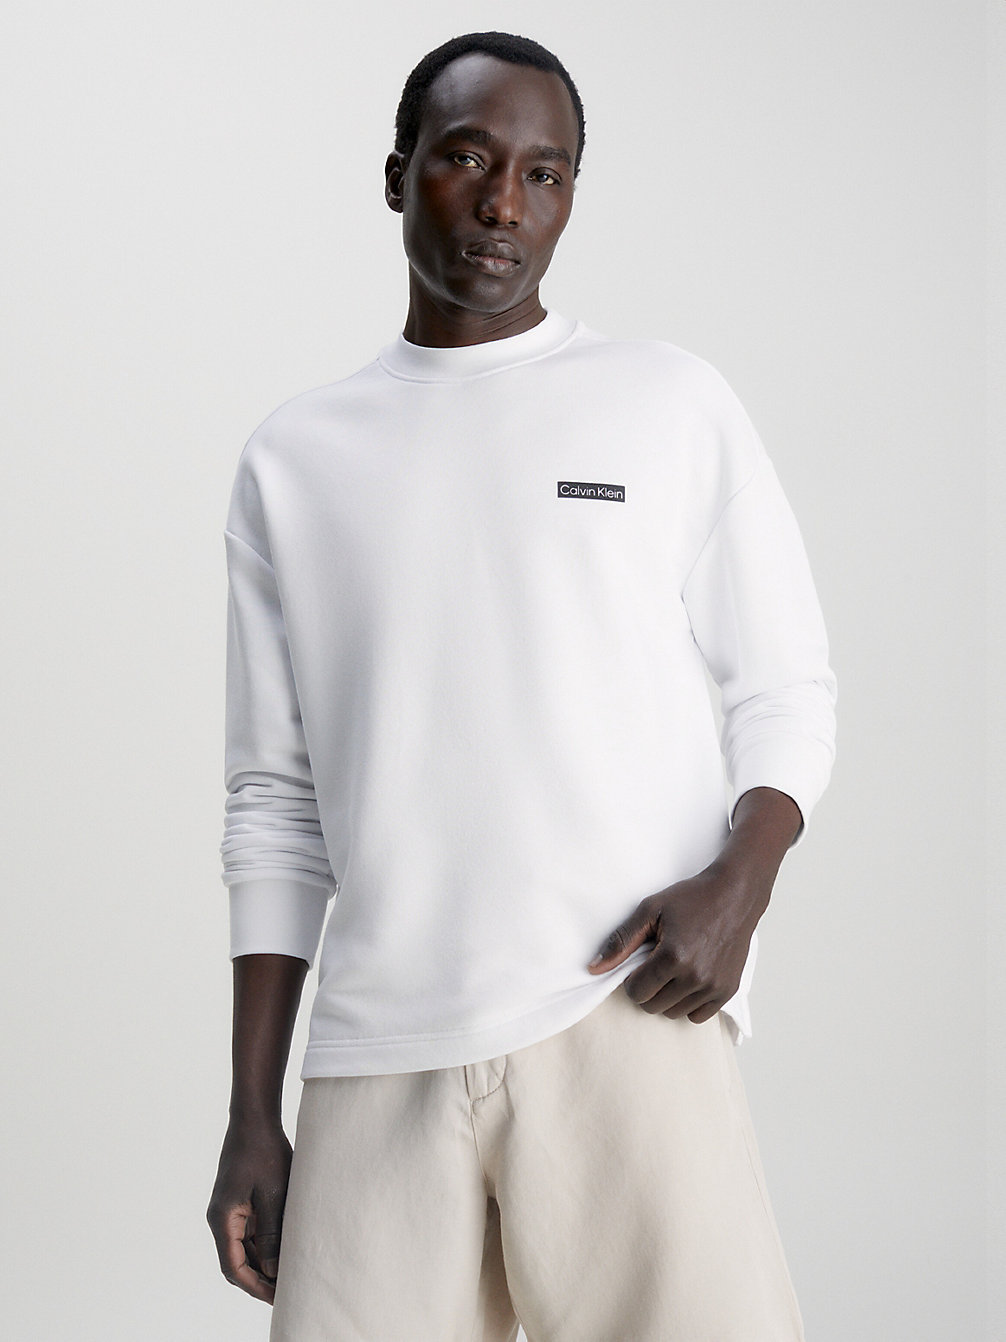 BRIGHT WHITE > Schwarzer Hoodie Mit Print > undefined men - Calvin Klein